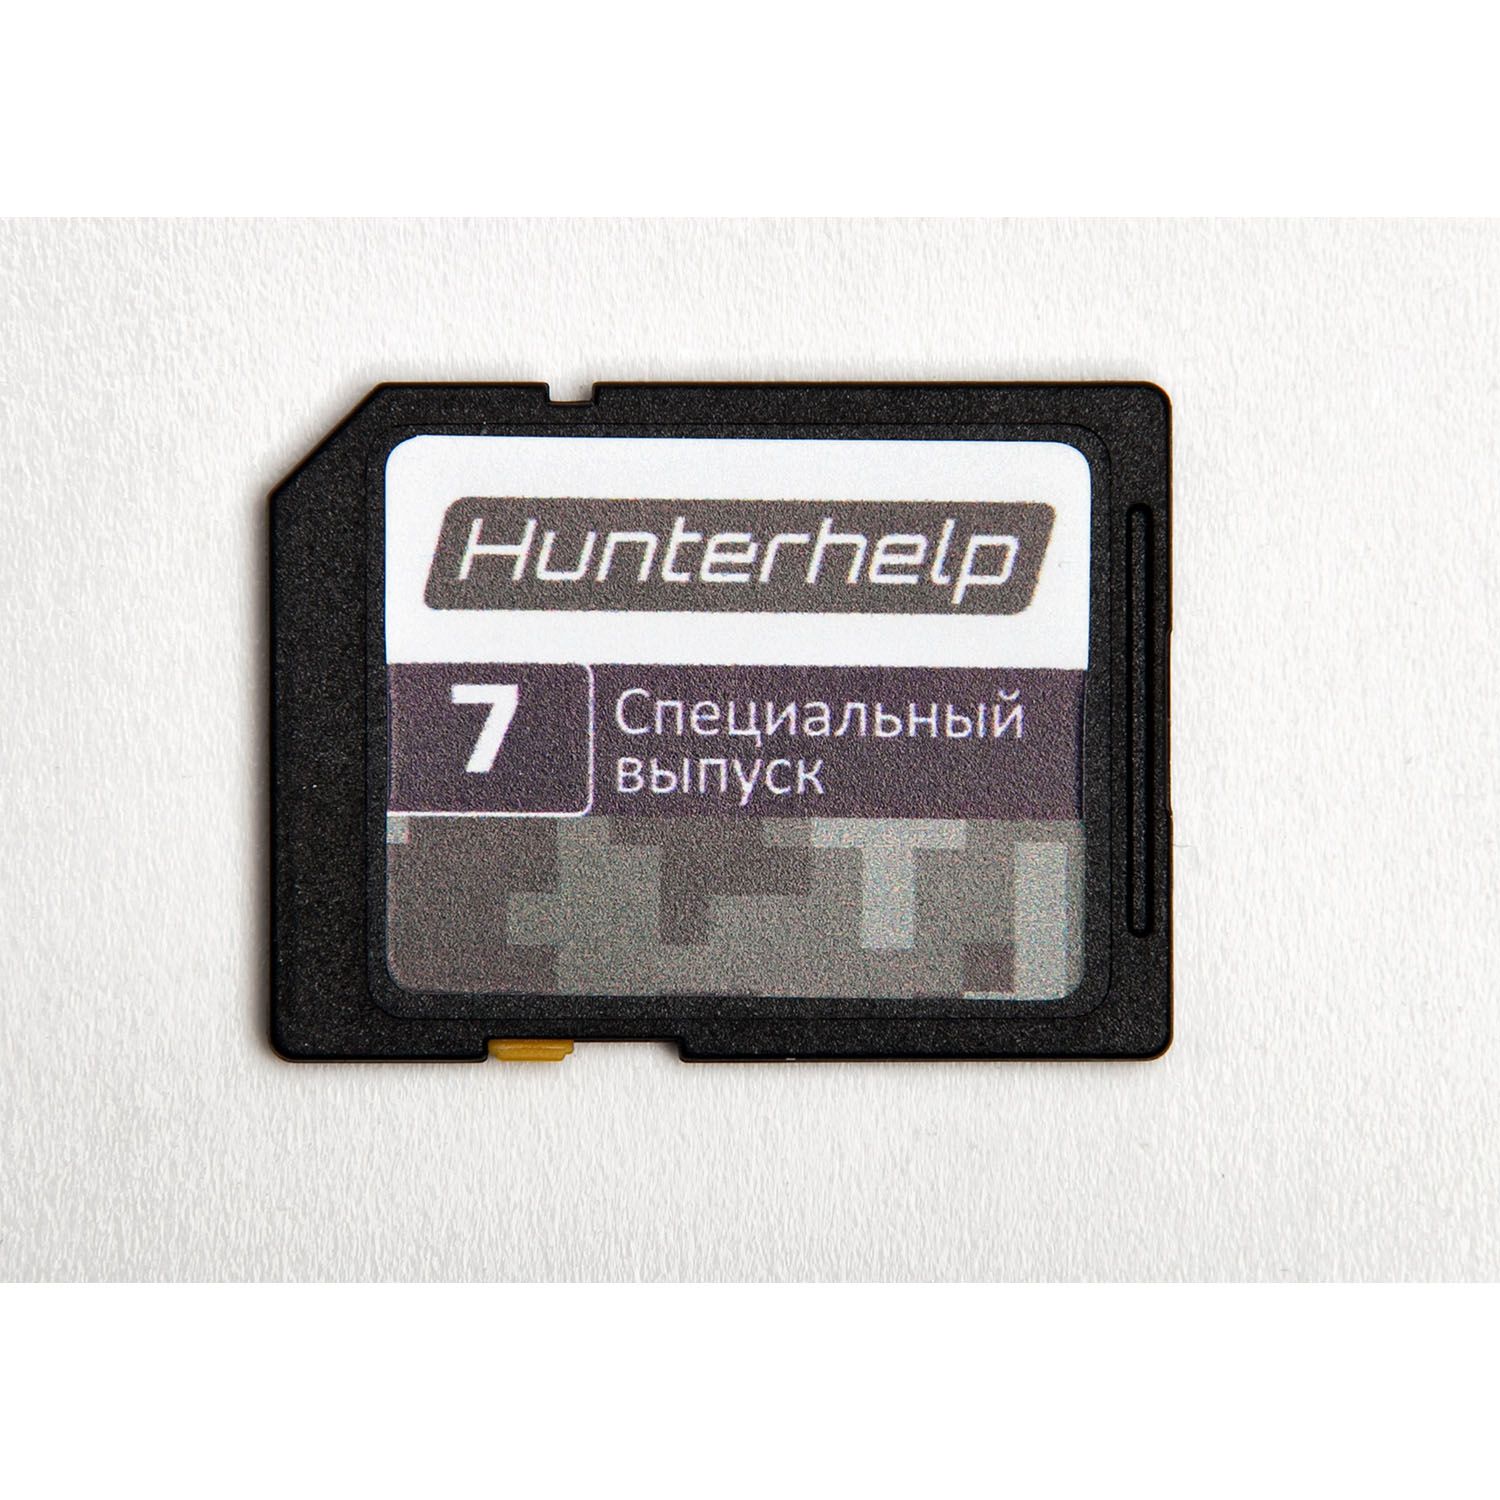 Электронный манок Hunterhelp PRO, полный набор в кейсе (ALFA  2 шт, пульт ДУ, полная фонотека, АКБ)